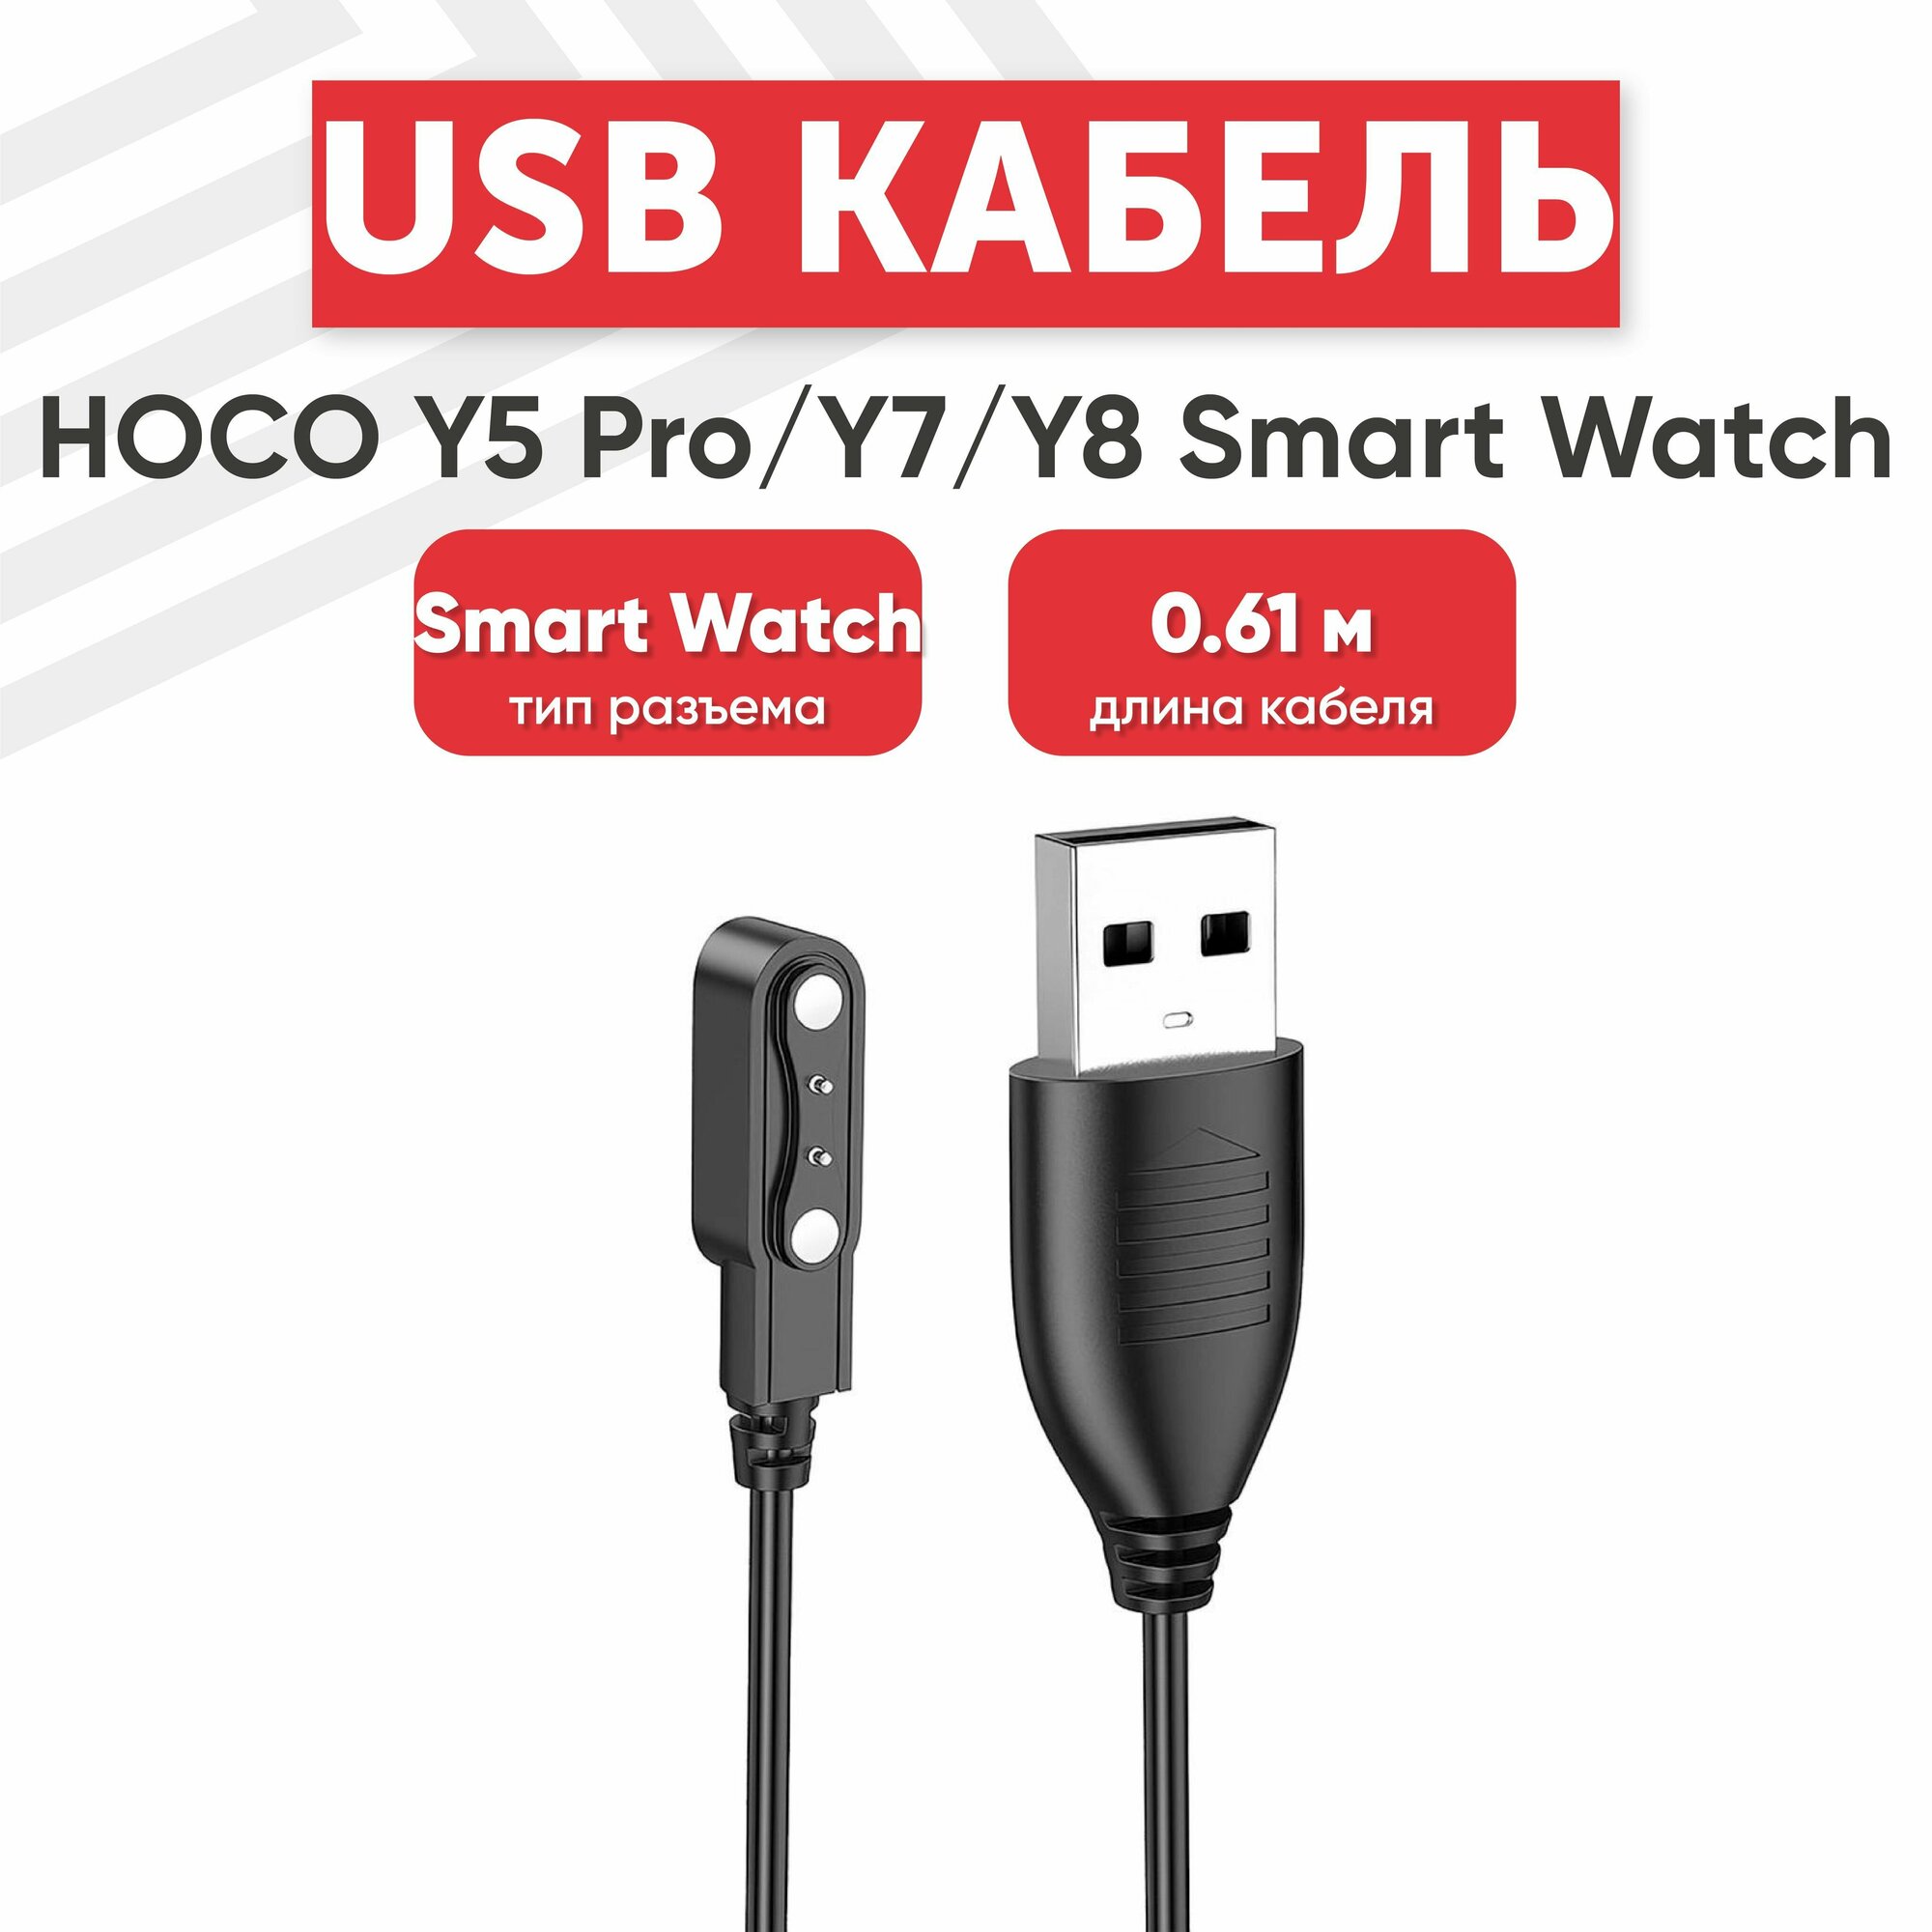 USB кабель HOCO для смарт-часов Y5 Pro/Y7/Y8 магнитный 0.61м PVC (черный)